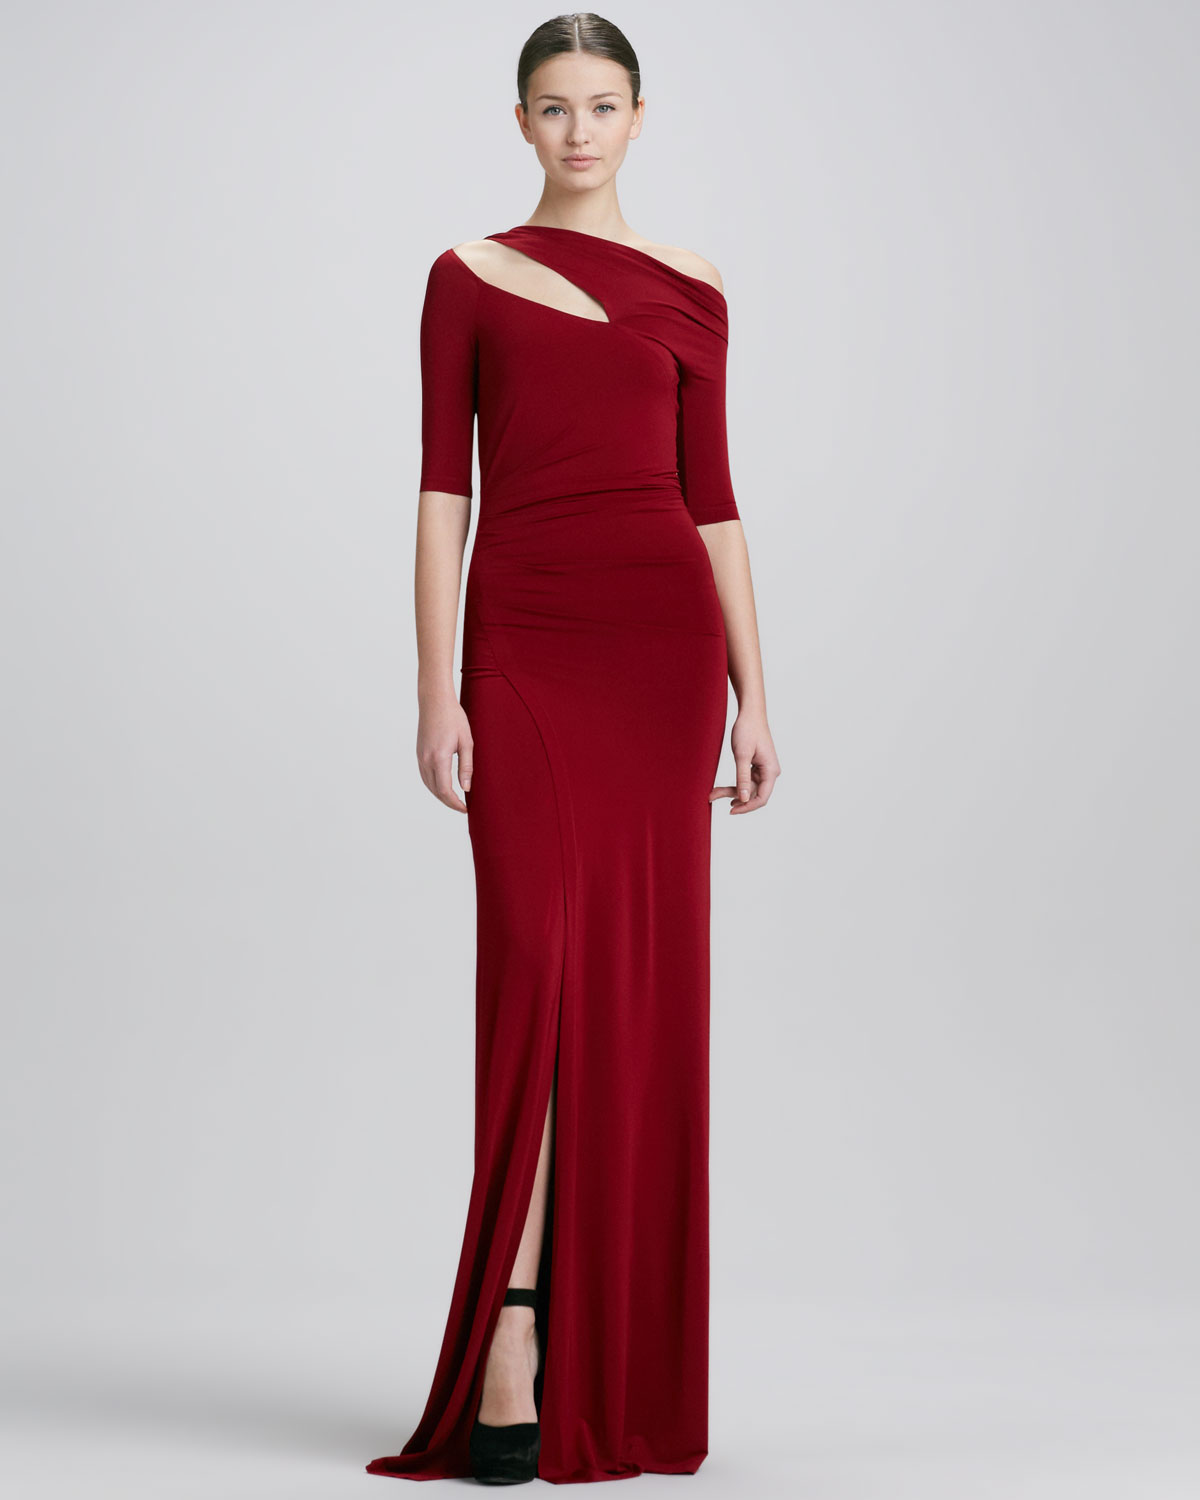 Lyst - Donna karan Halfsleeve Coldshoulder Evening Gown Red in Red